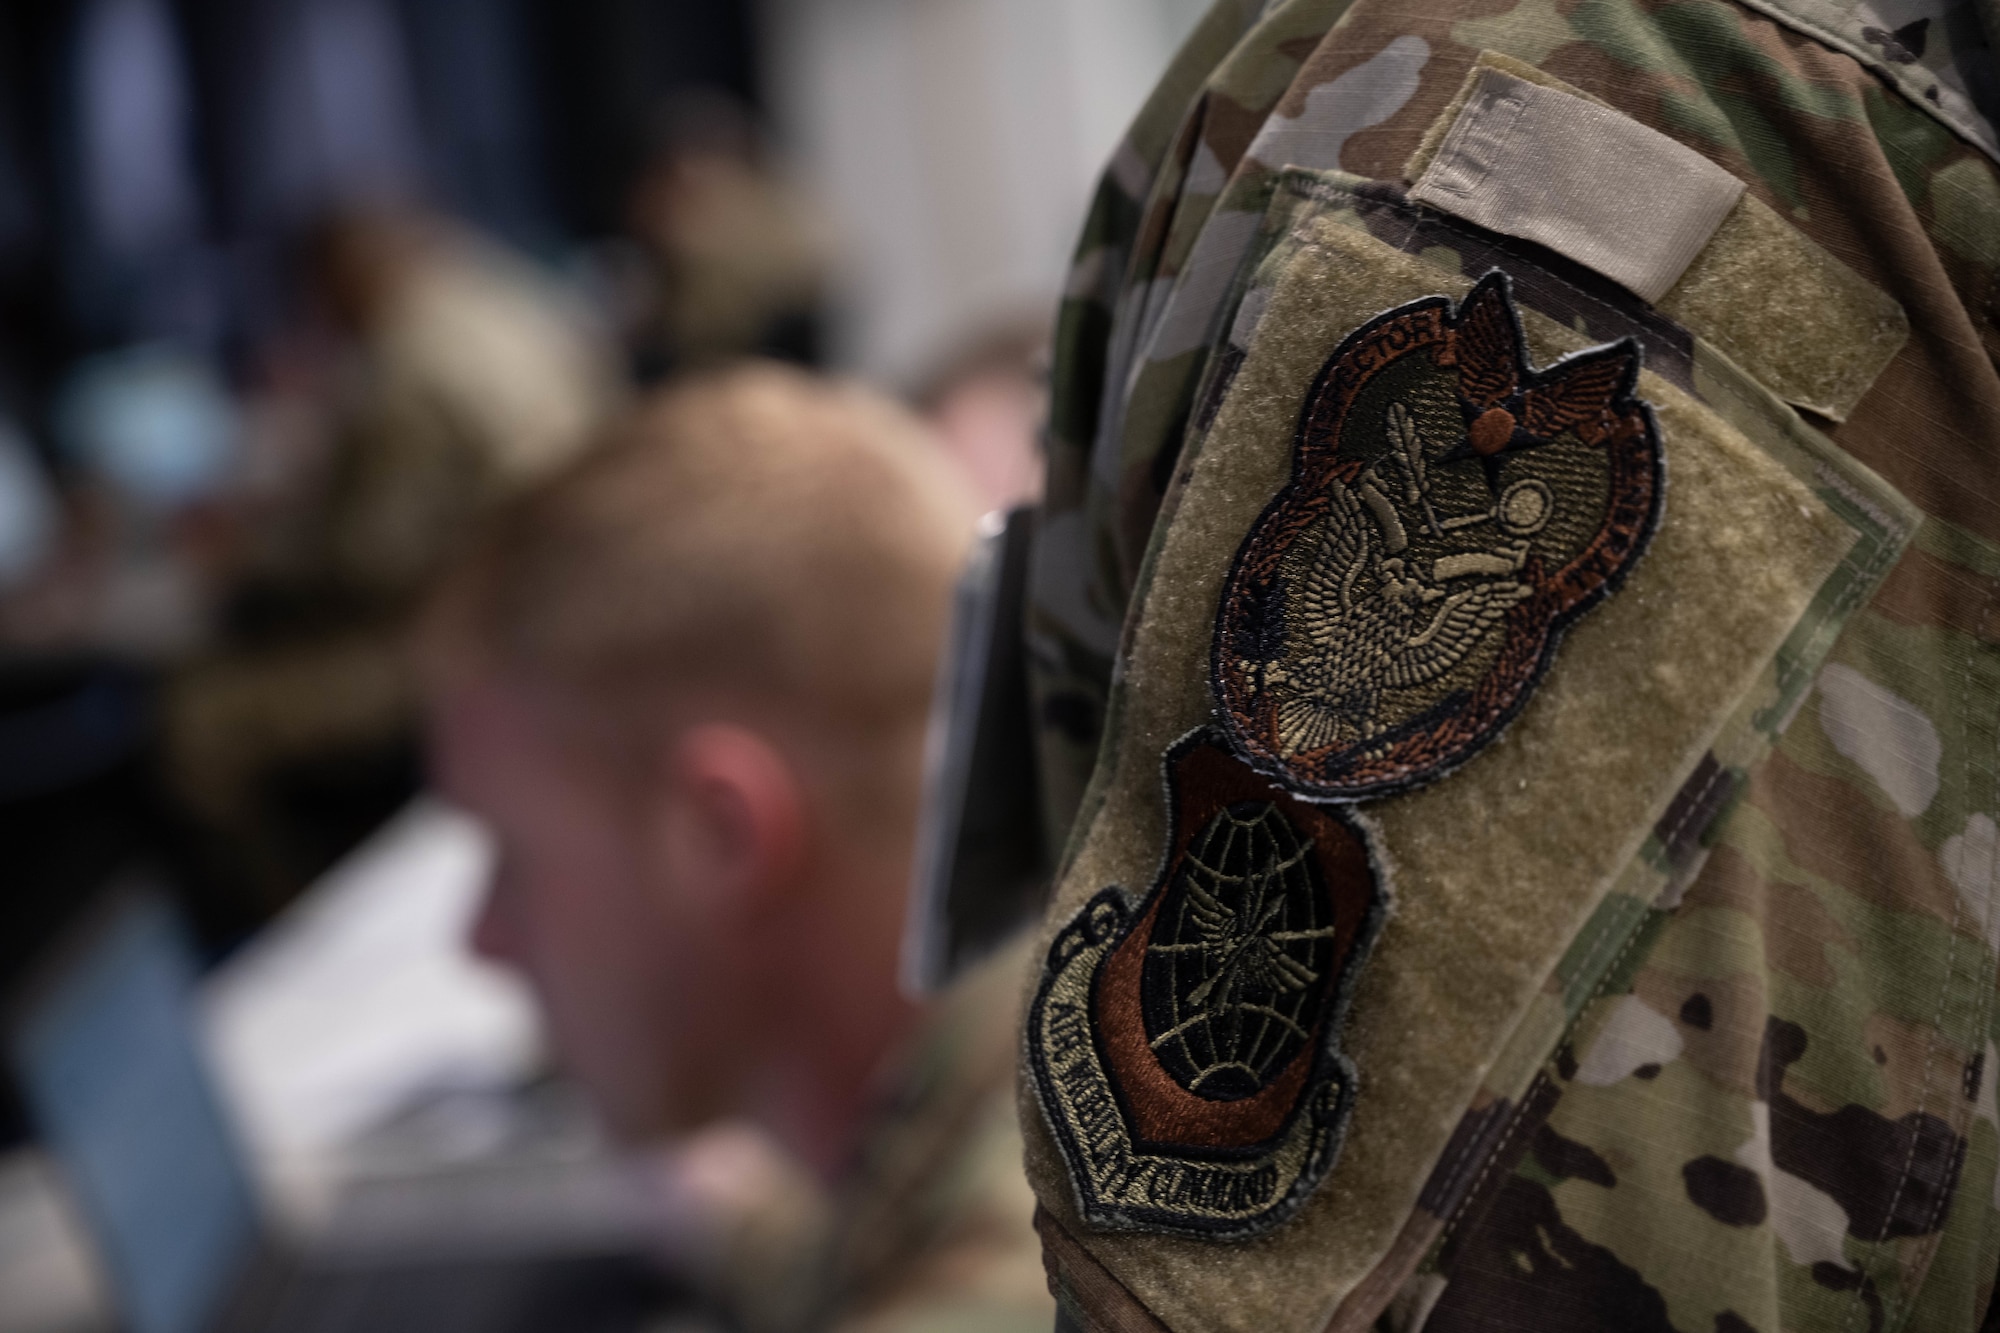 Unit identifiers sit on Air Force uniform